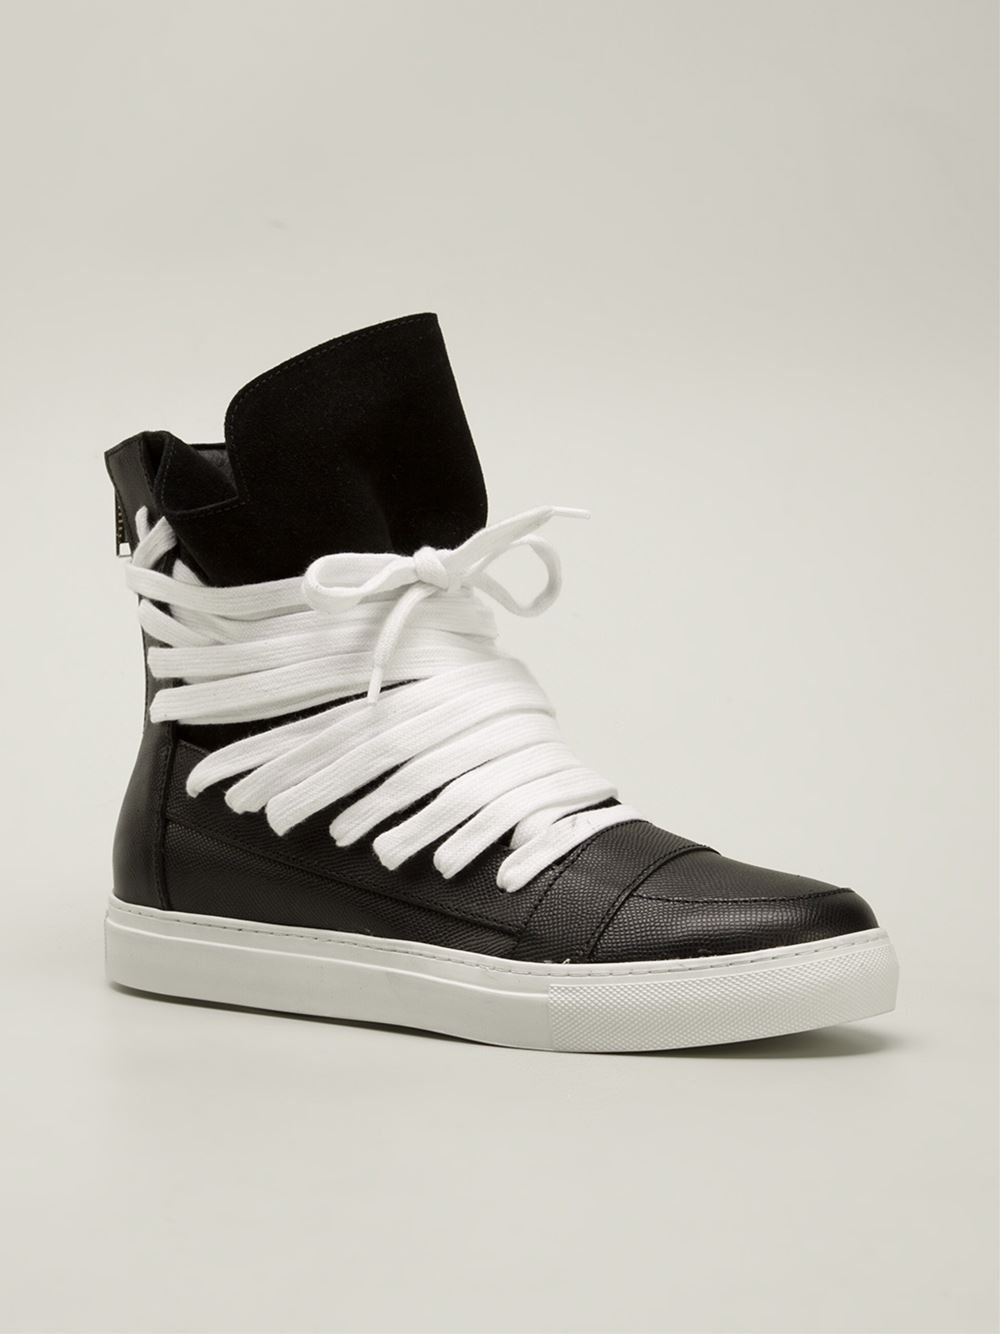 Kris Van Assche Multi Lace Black Leather High Top Sneaker Size 44 US 11 ...